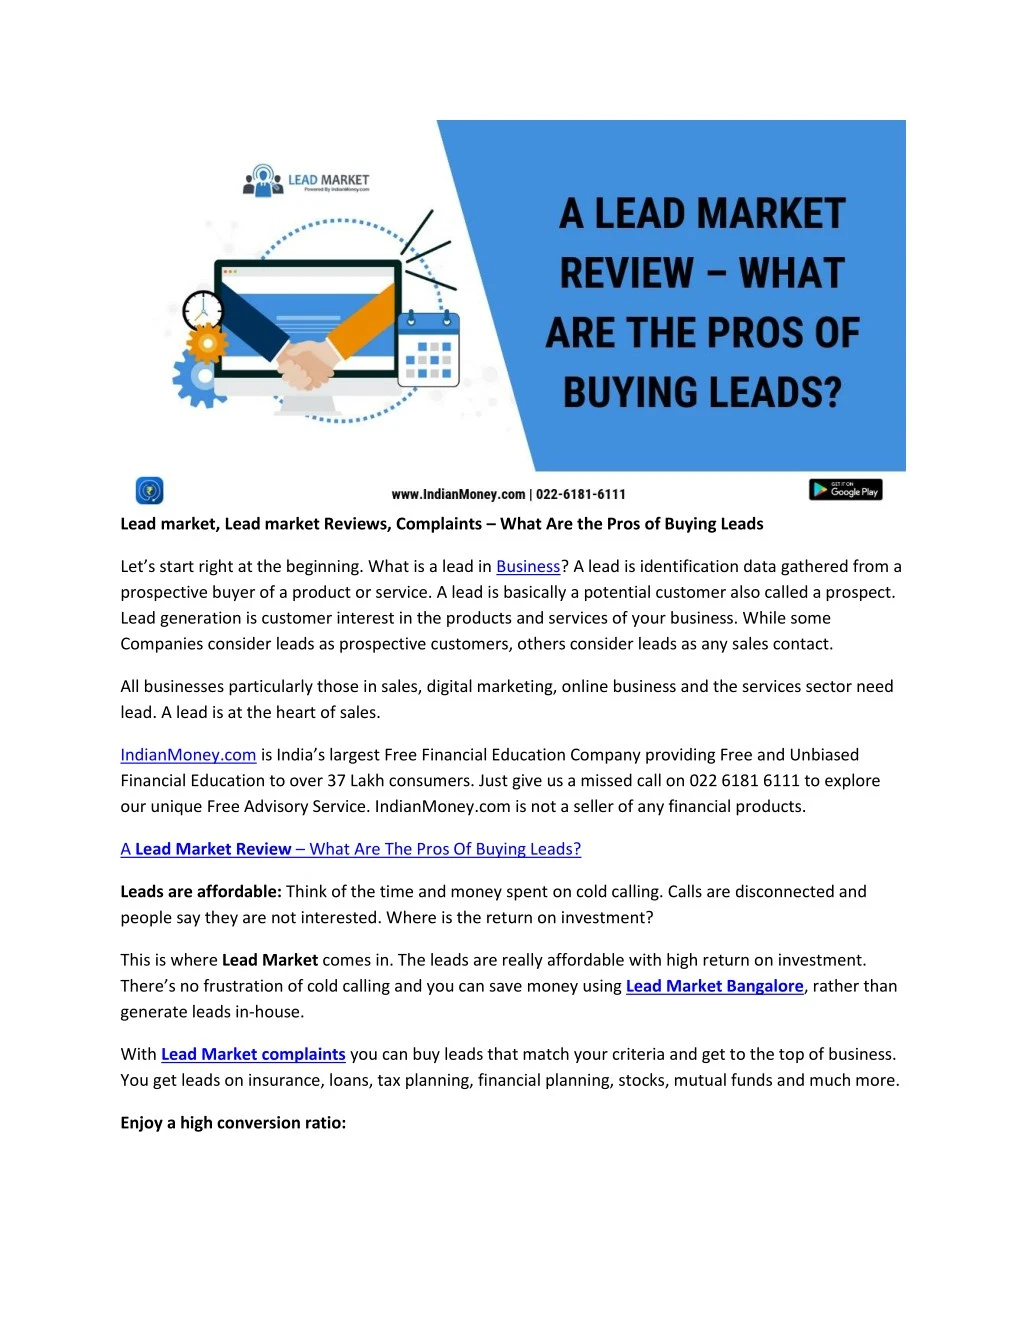 lead market lead market reviews complaints what